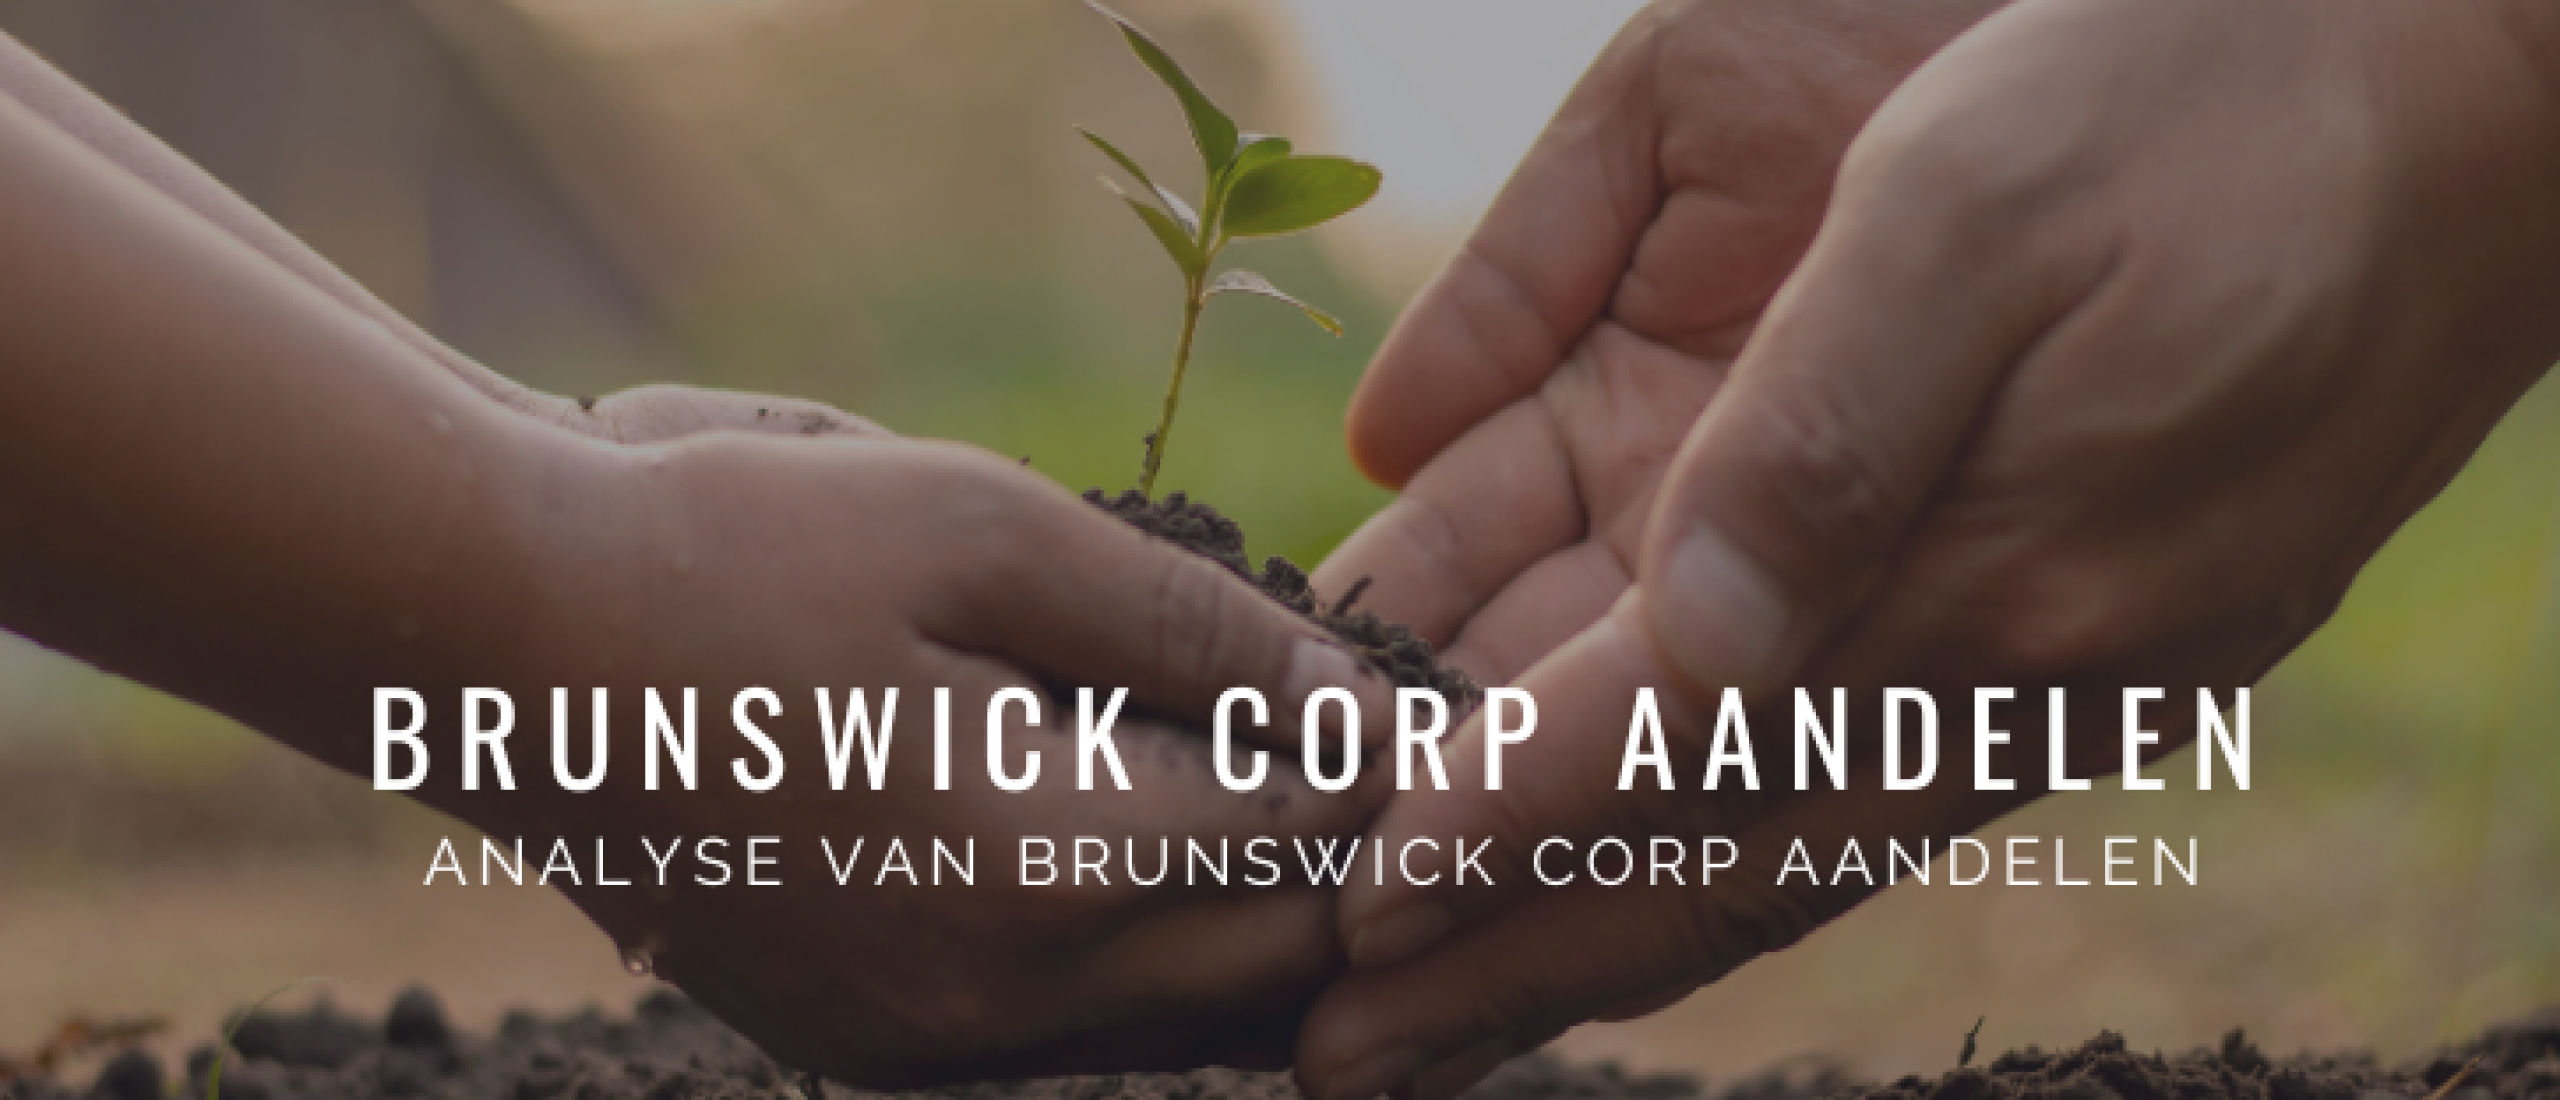 brunswick-corp-groeiaandelen-kopen